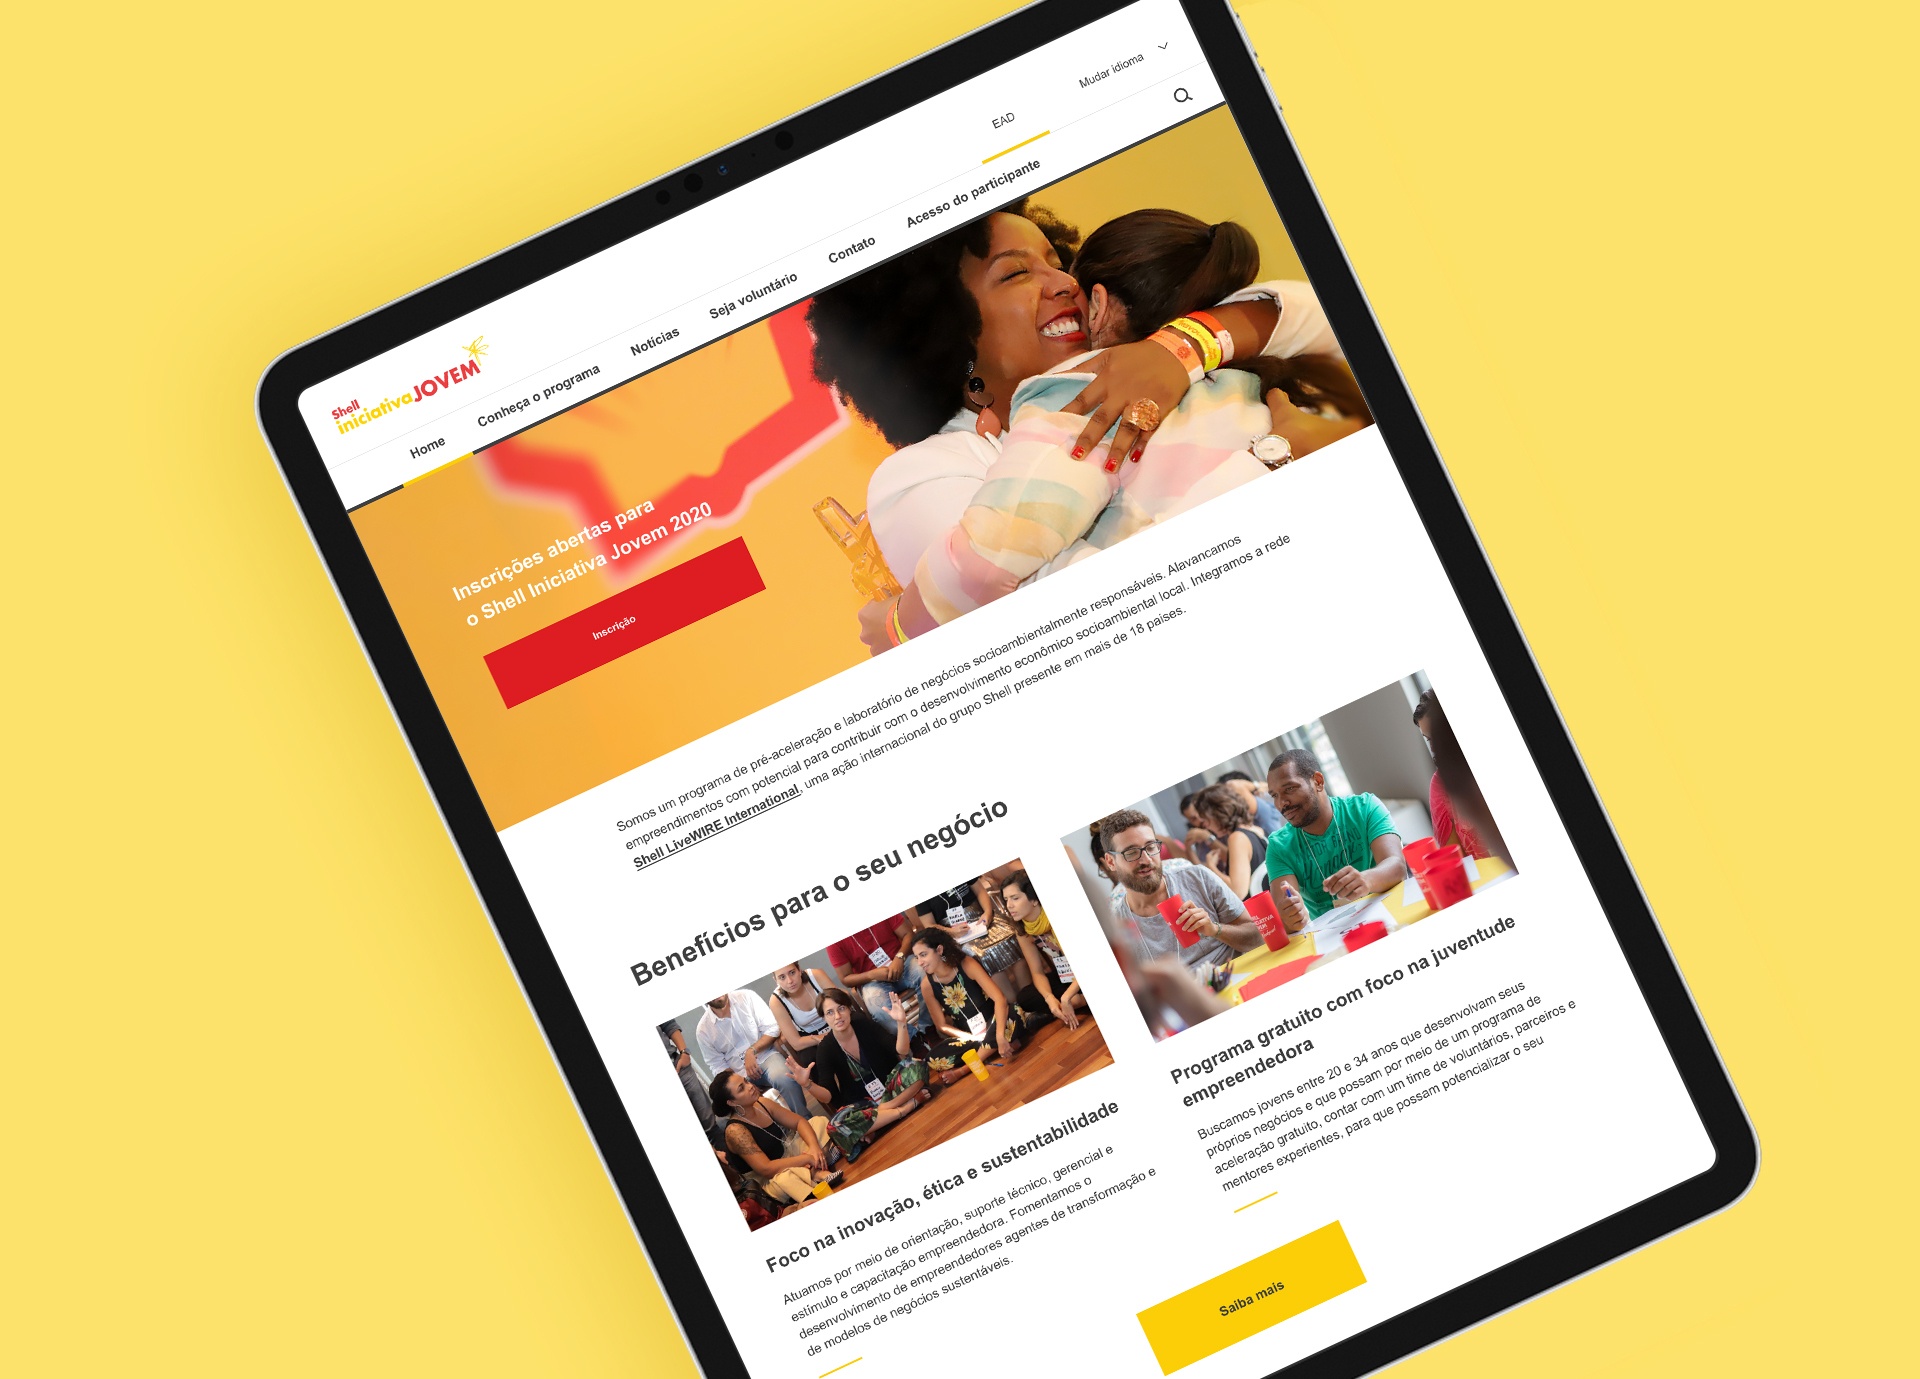 Shell Iniciativa Jovem, imagem de capa do projeto que mostra uma das telas do site em um tablet